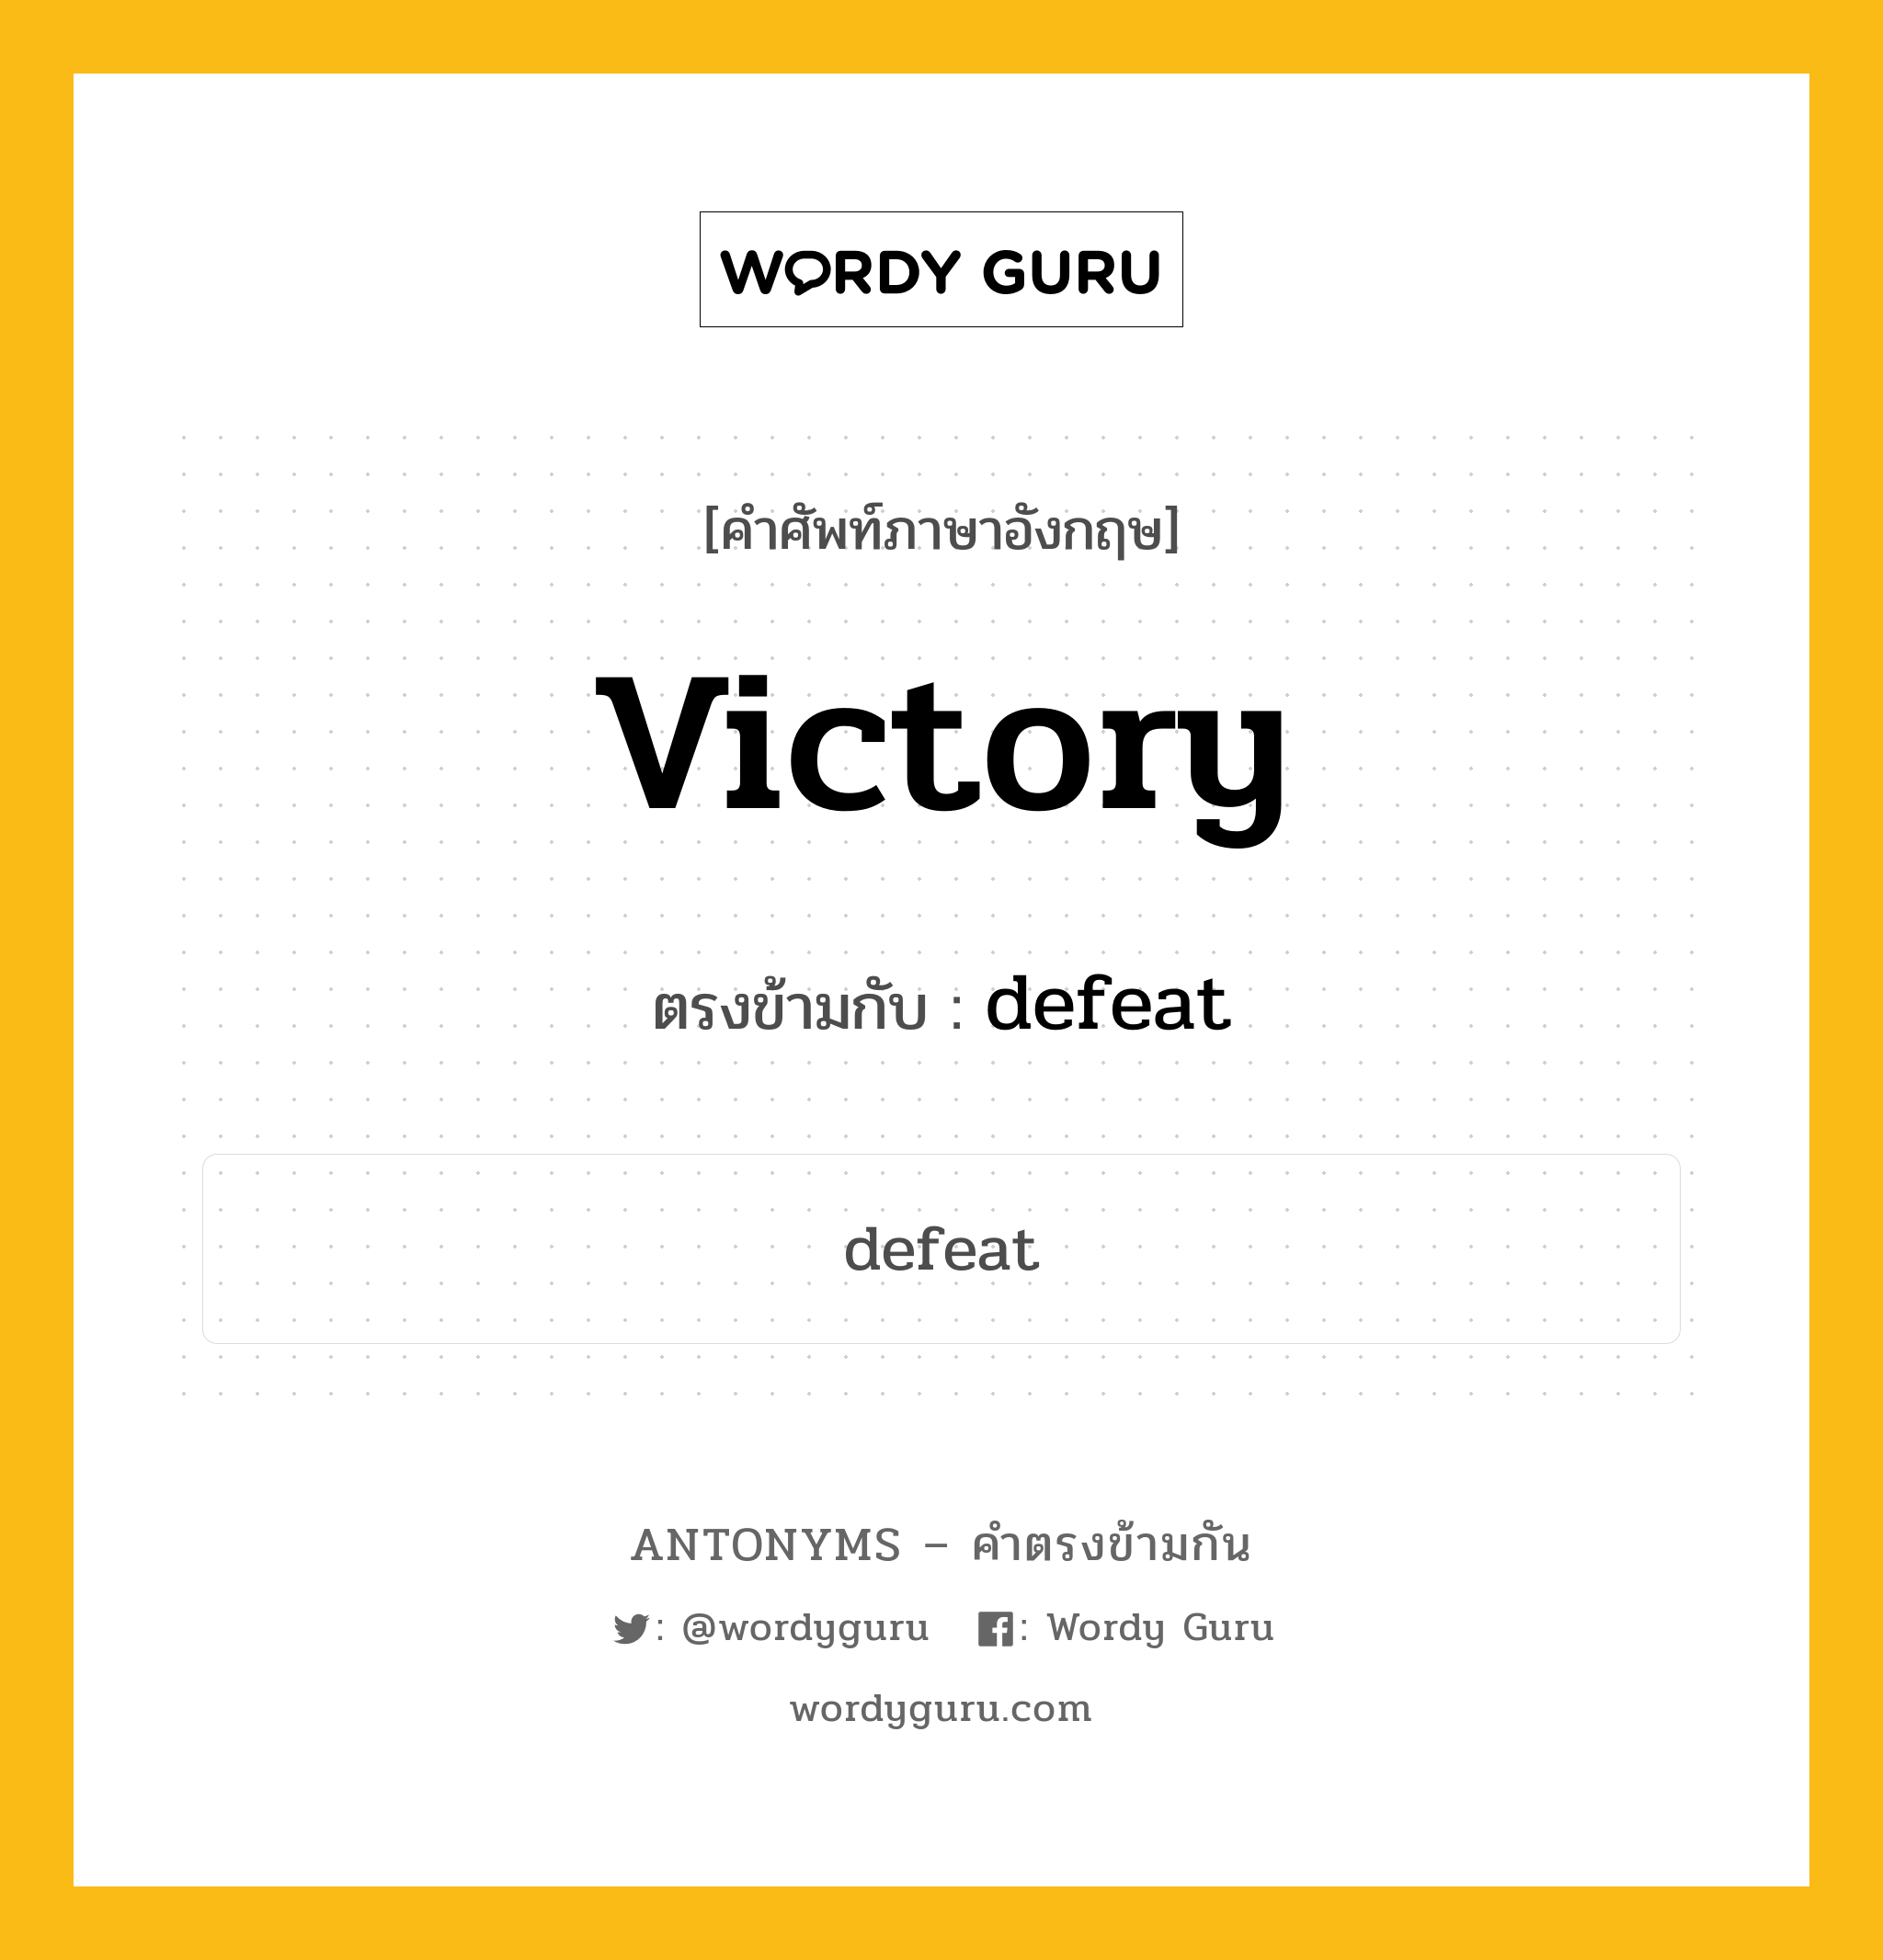 victory เป็นคำตรงข้ามกับคำไหนบ้าง?, คำศัพท์ภาษาอังกฤษ victory ตรงข้ามกับ defeat หมวด defeat